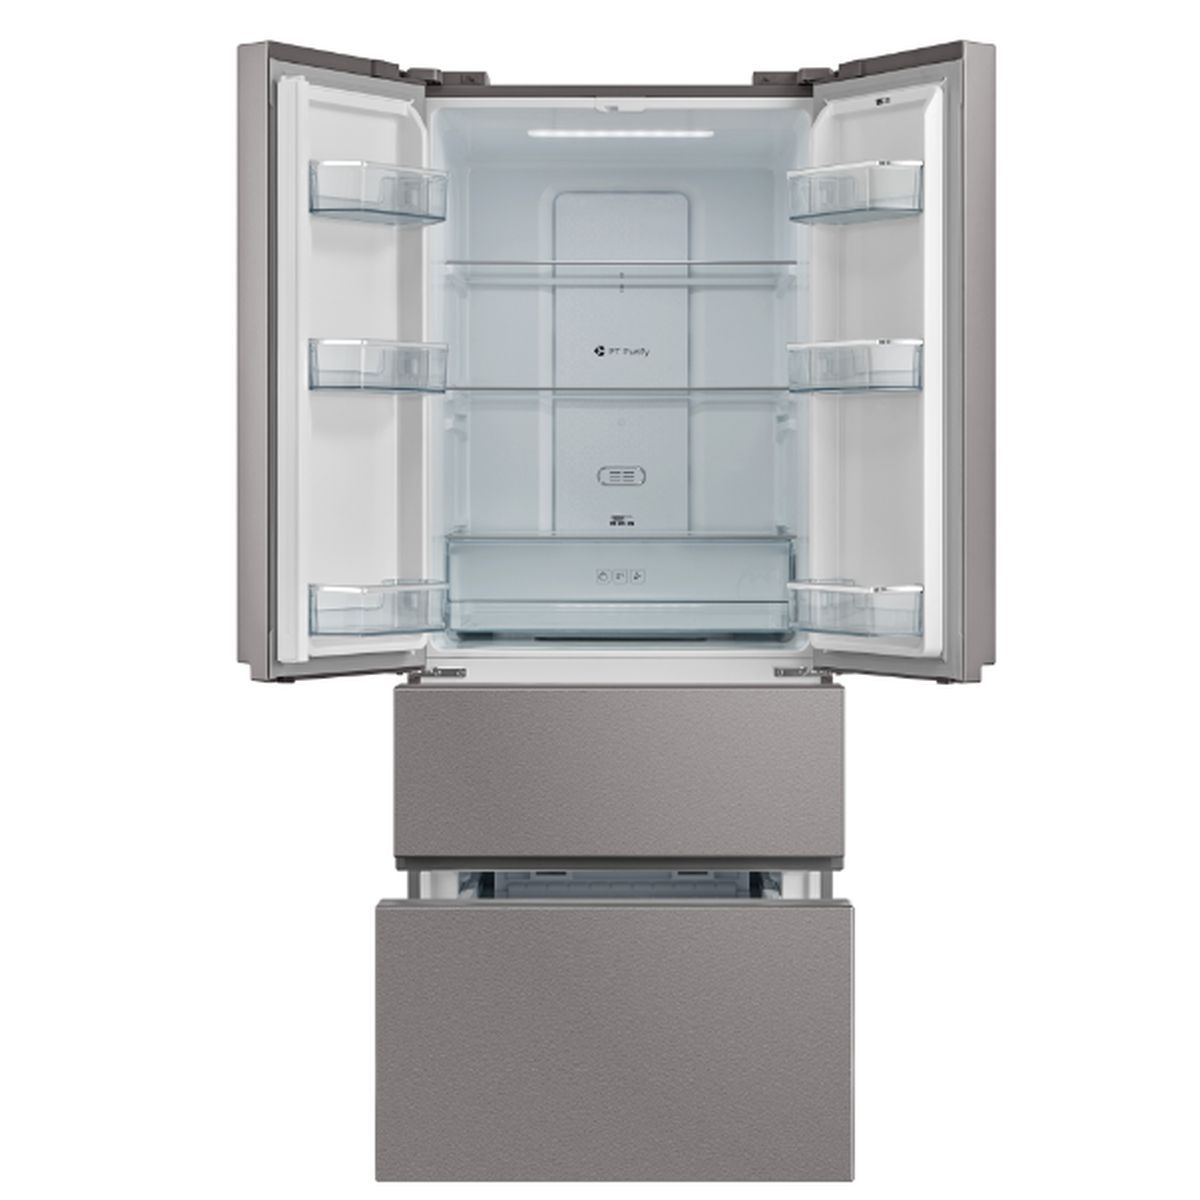 Réfrigérateur multi portes 155487 QILIVE 431 L pas cher - Réfrigérateur américain Auchan